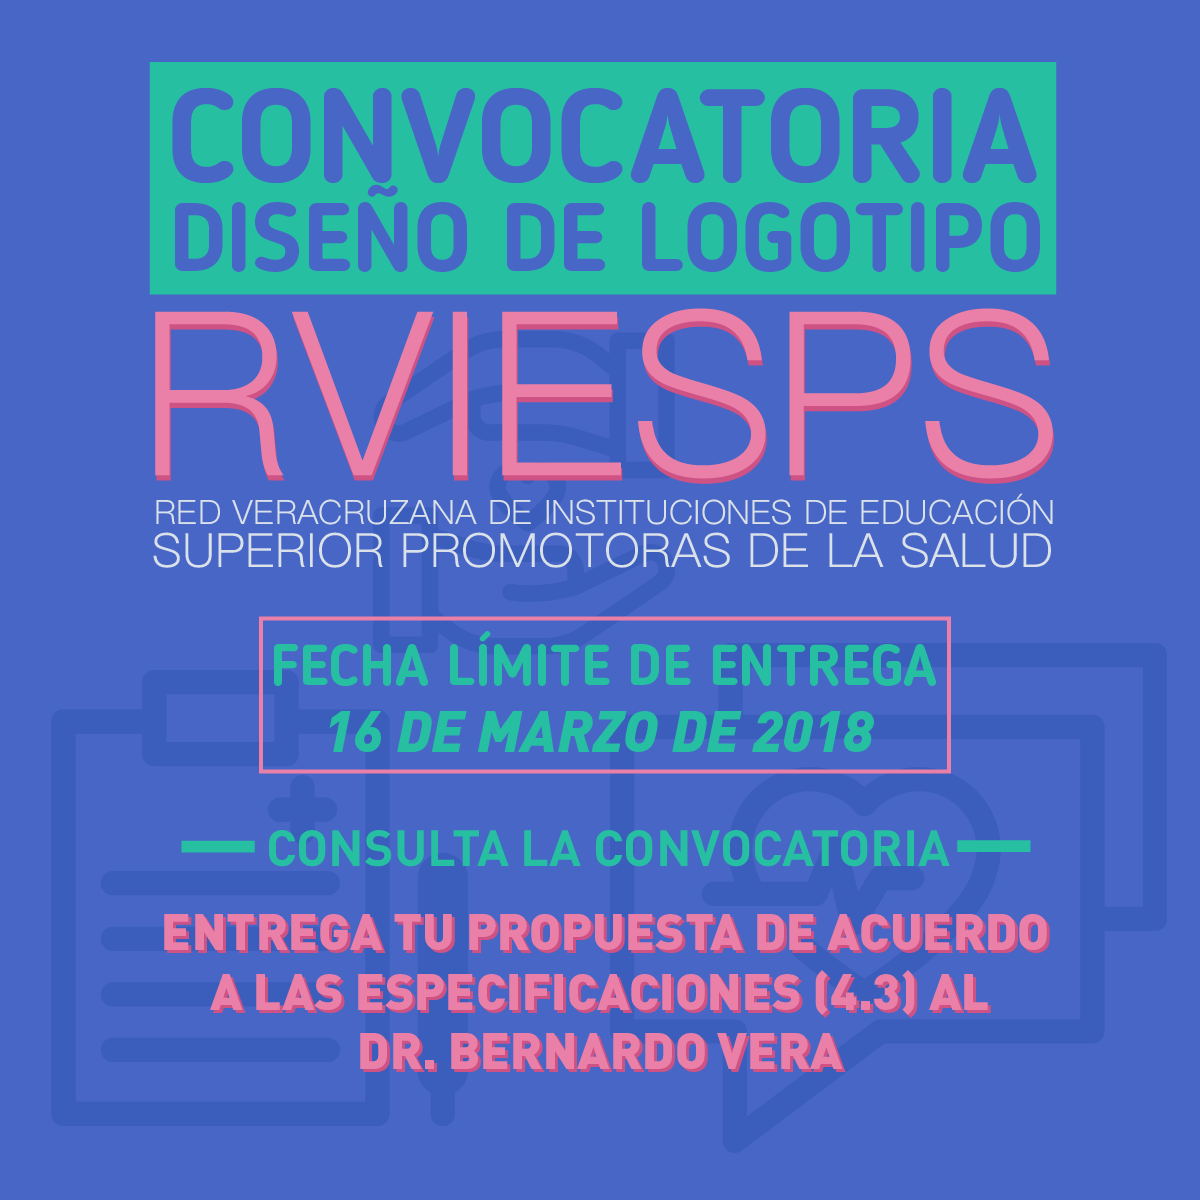 Diseño de Logotipo RVIESPS